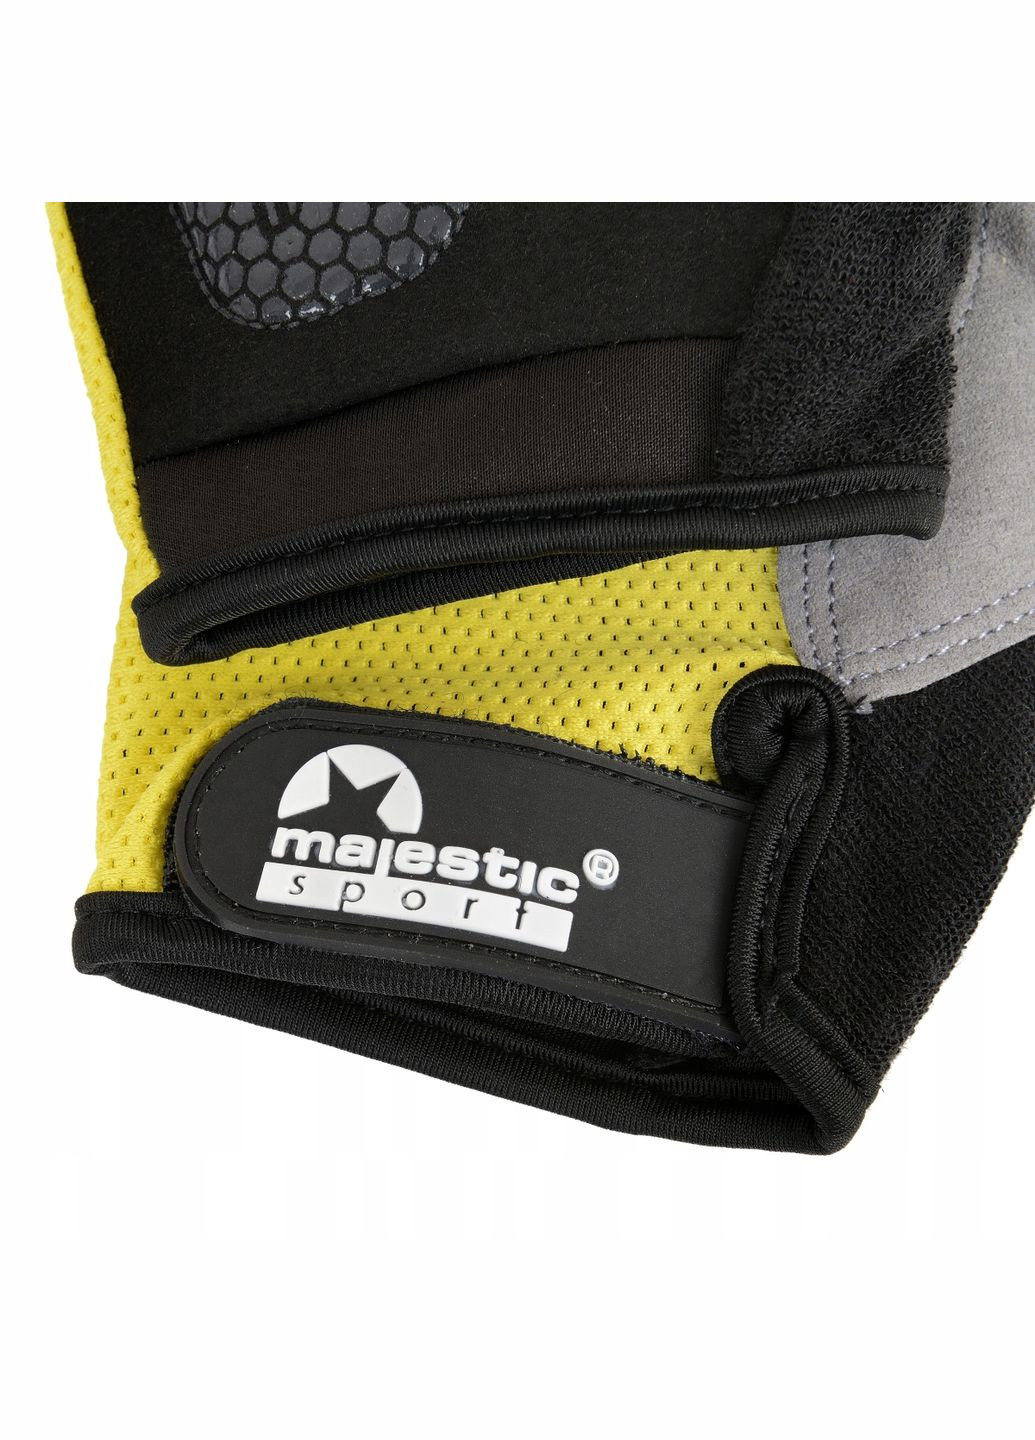 Велорукавички без пальців M-CG-GB- (XL) Black/Yellow Majestic Sport m-cg-gb-xl (275804627)